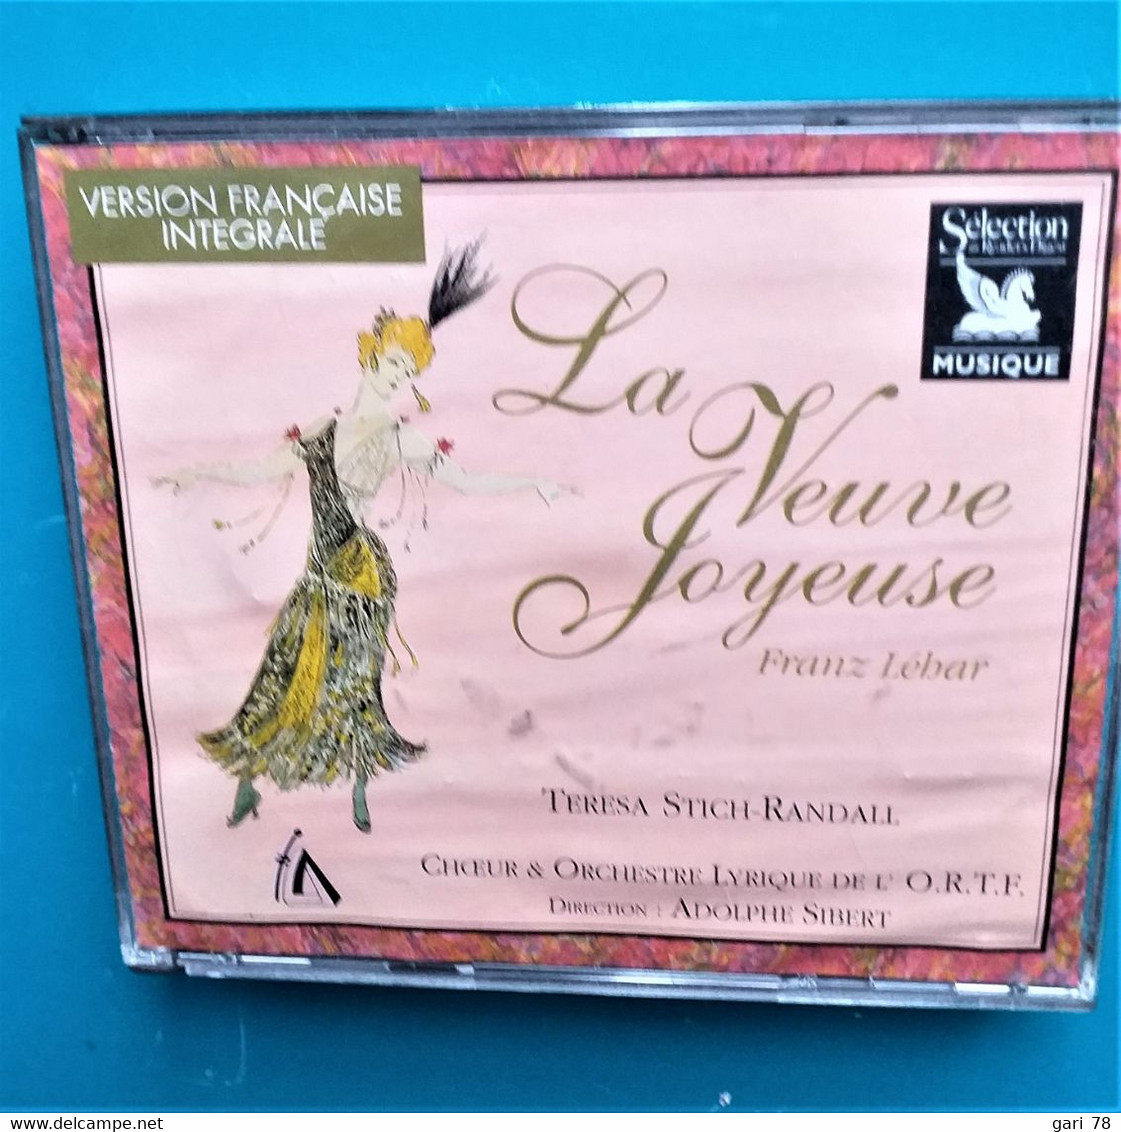 2 CD - LA VEUVE JOYEUSE De Franz LEHAR, Choeur Et Orchestre Lyrique De L'ORTF. Version Française Intégrale - Opera